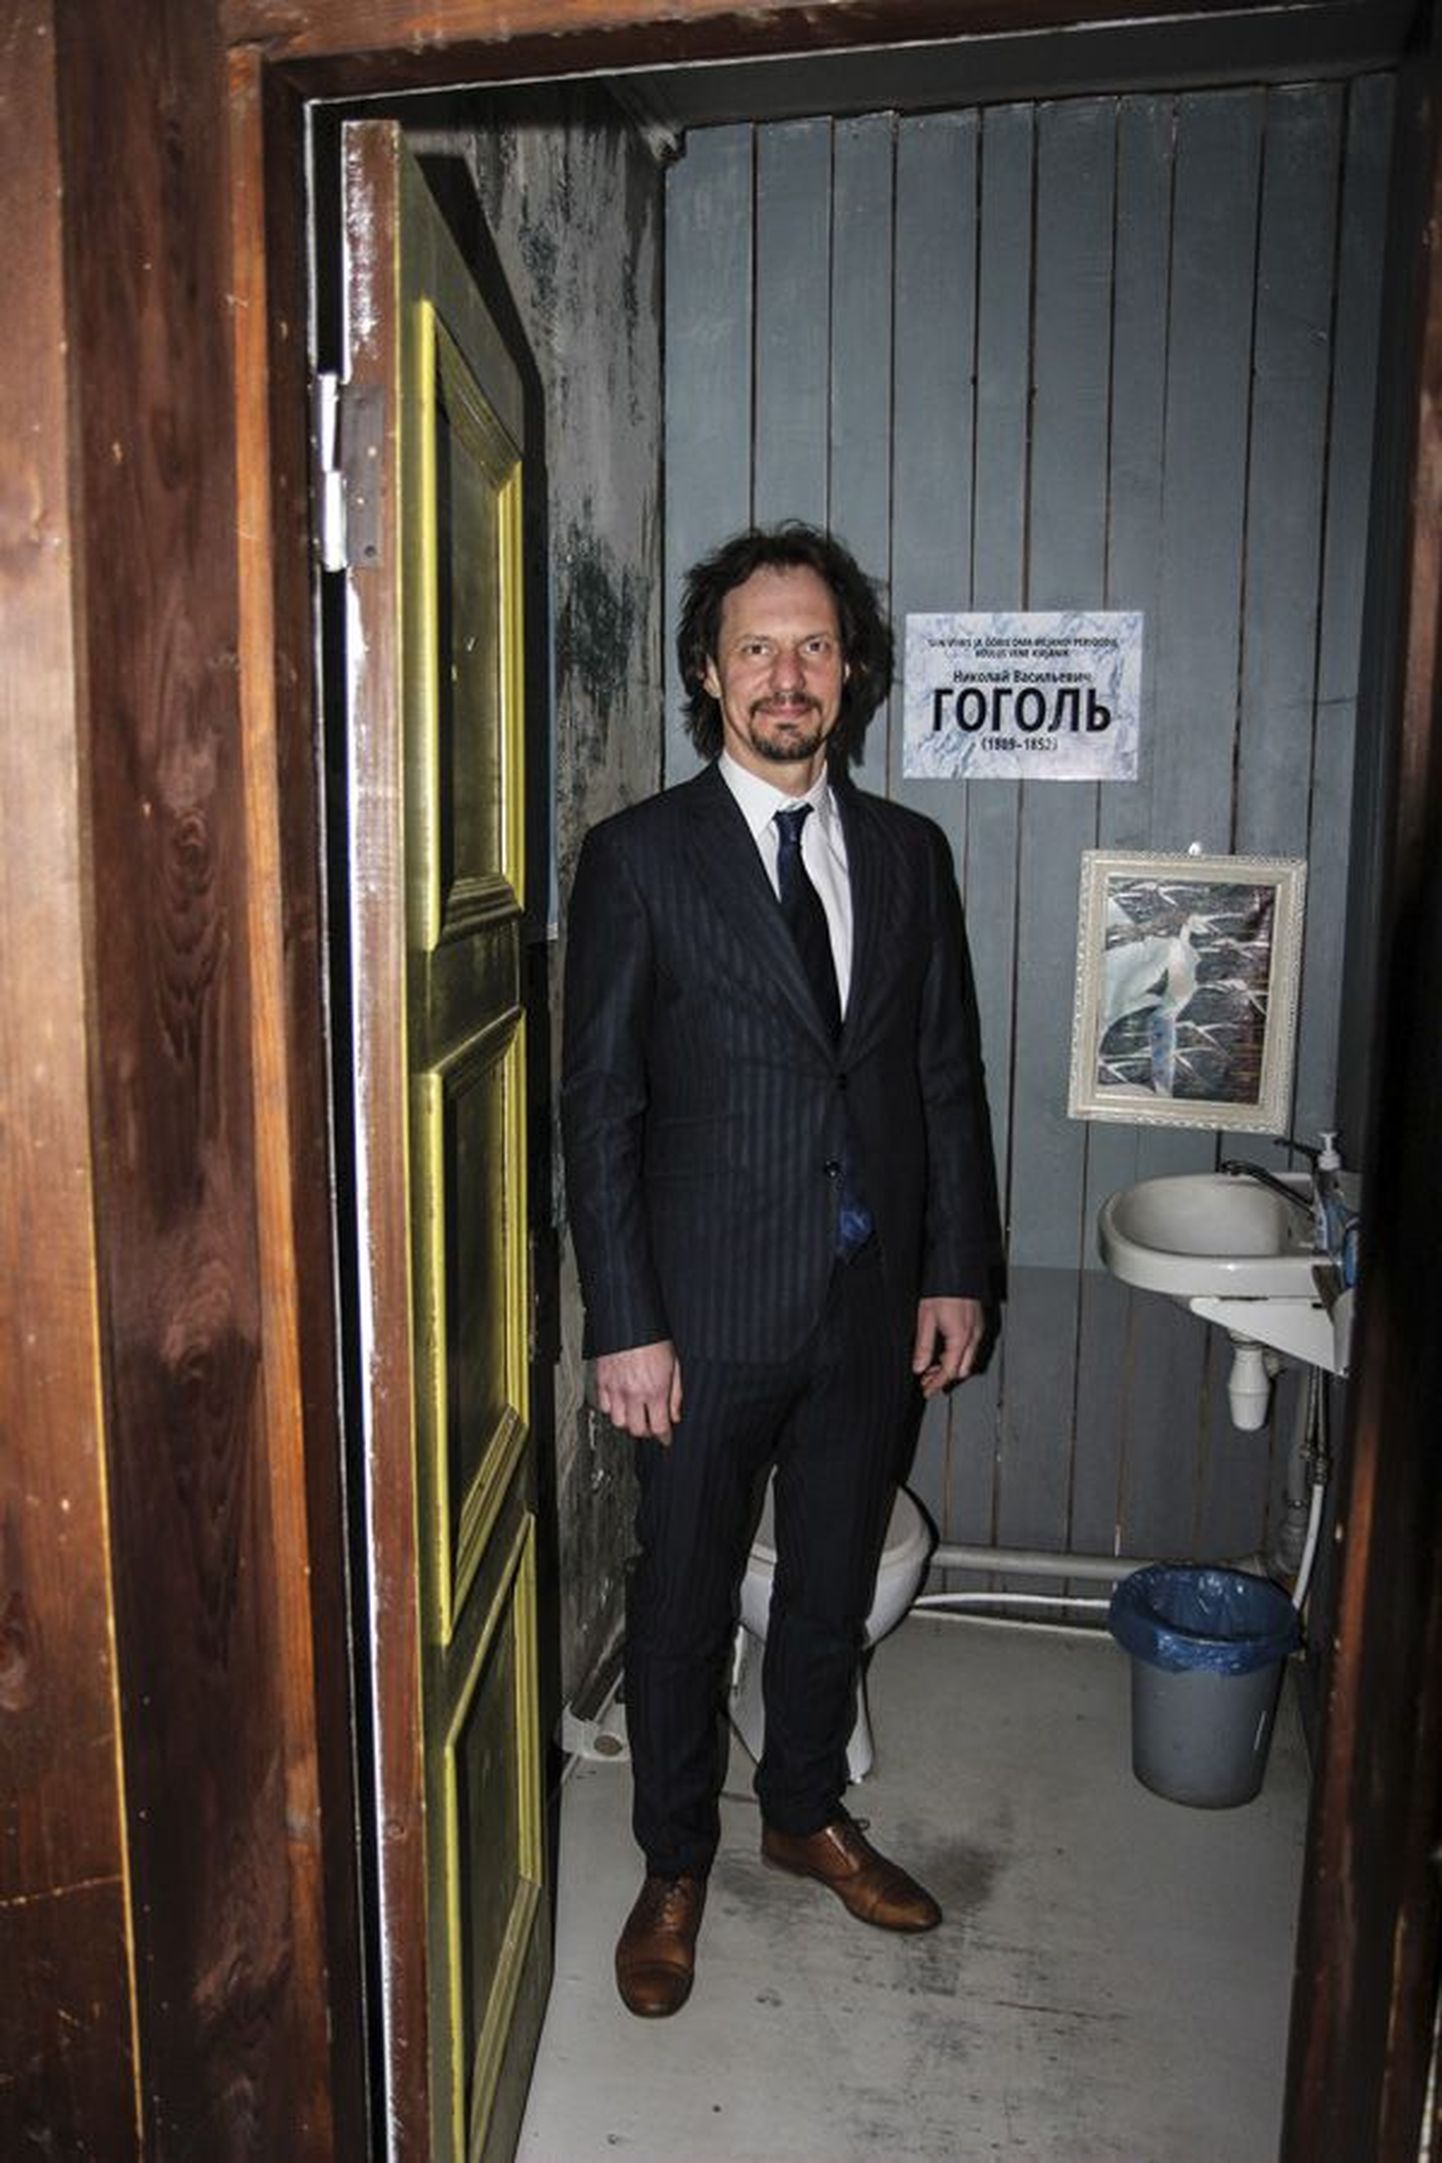 Kultuuriminister Indrek Saar veetis eelmisel reedel Viljandis sisuka päeva. Muu hulgas tegi ta tähendusrikka peatuse raamatubaari Romaan WC-s.